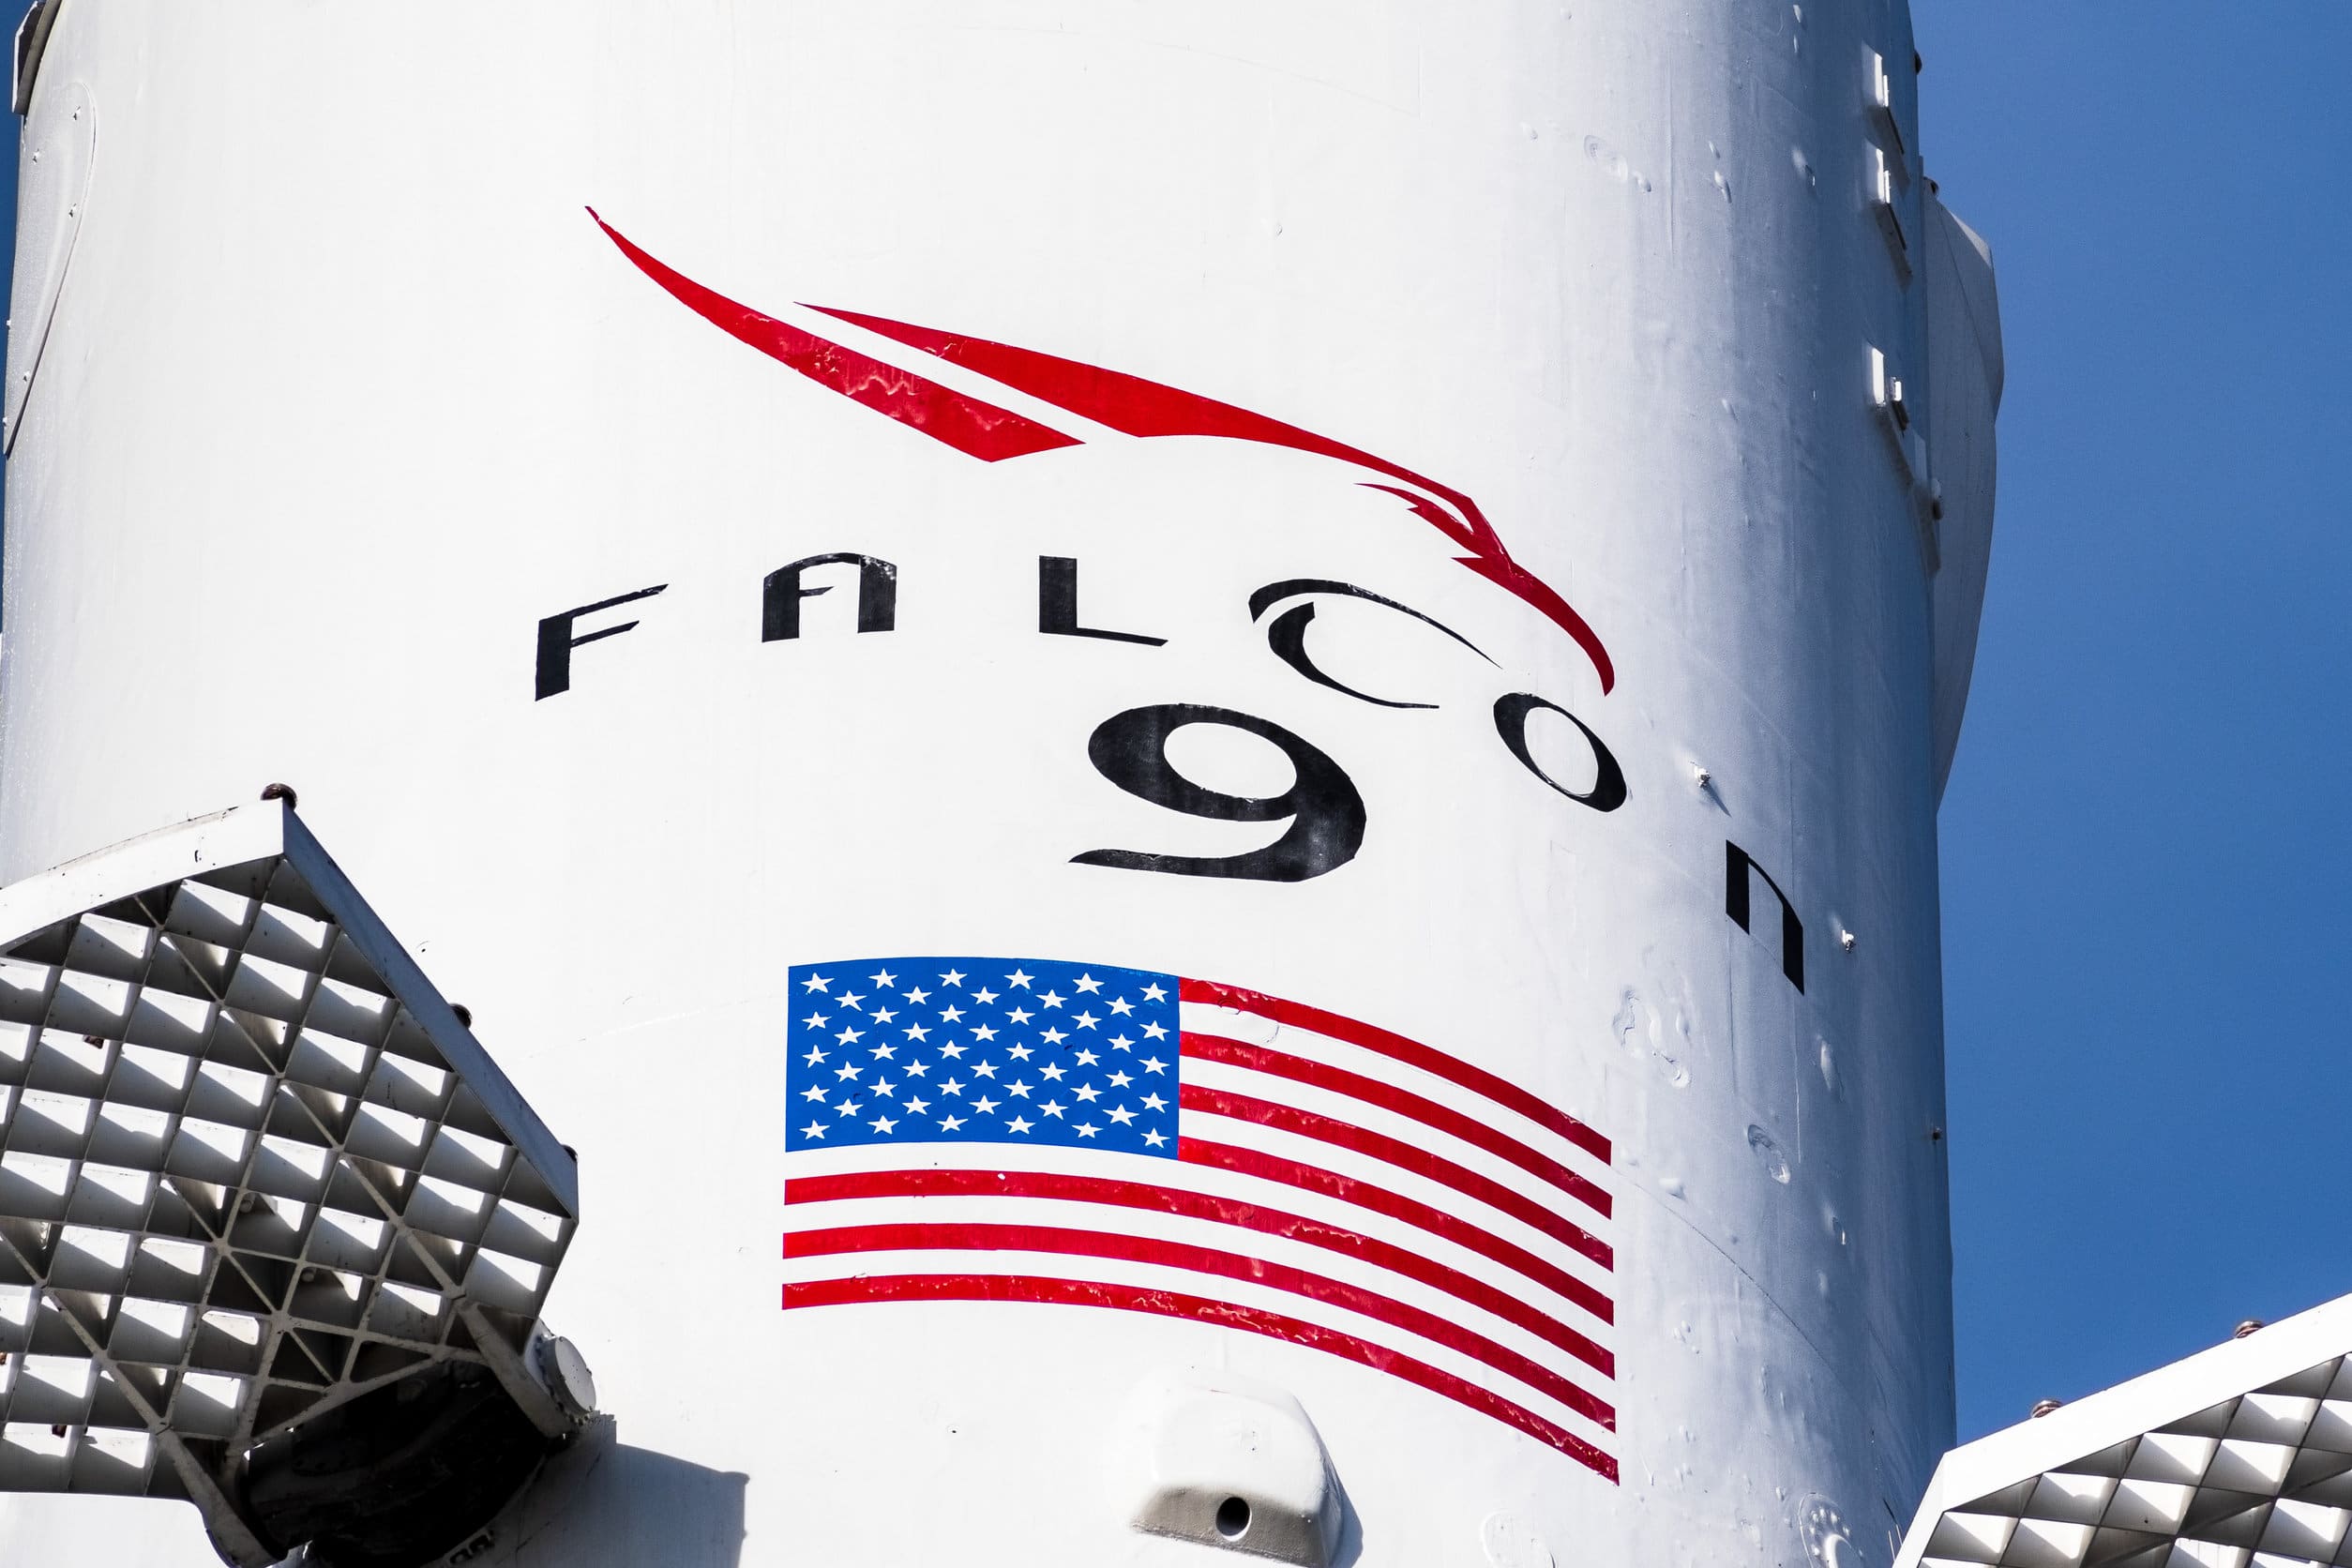 Fusée Falcon 9 de SpaceX